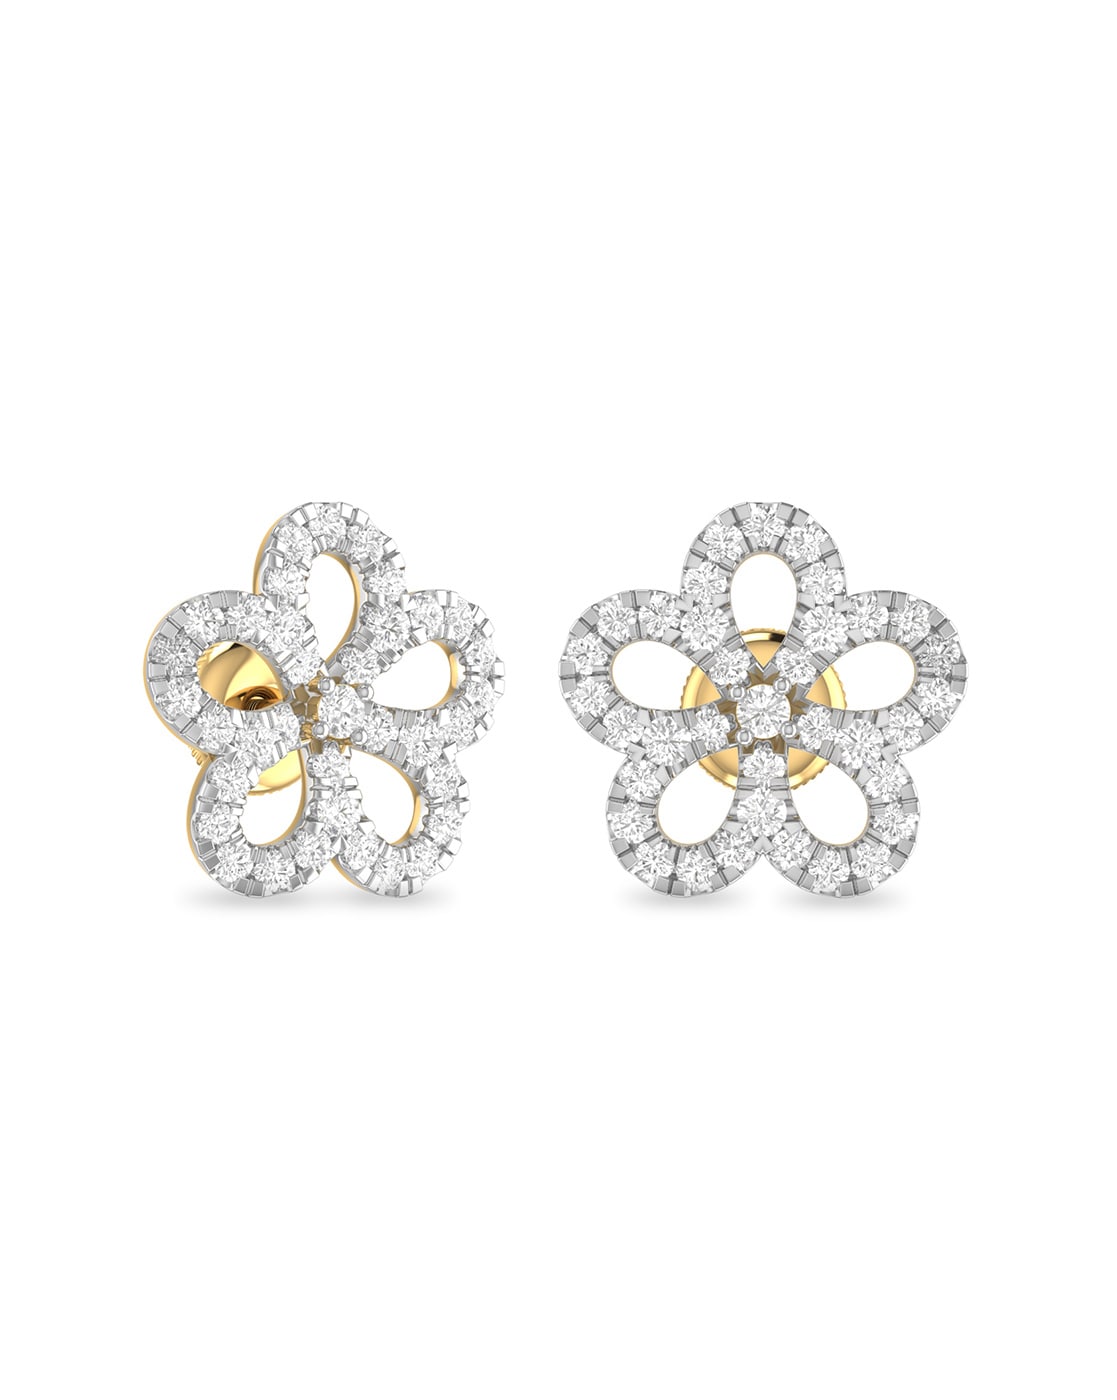 Elements Flower Earrings with Diamonds in 18K White Gold - Kwiat